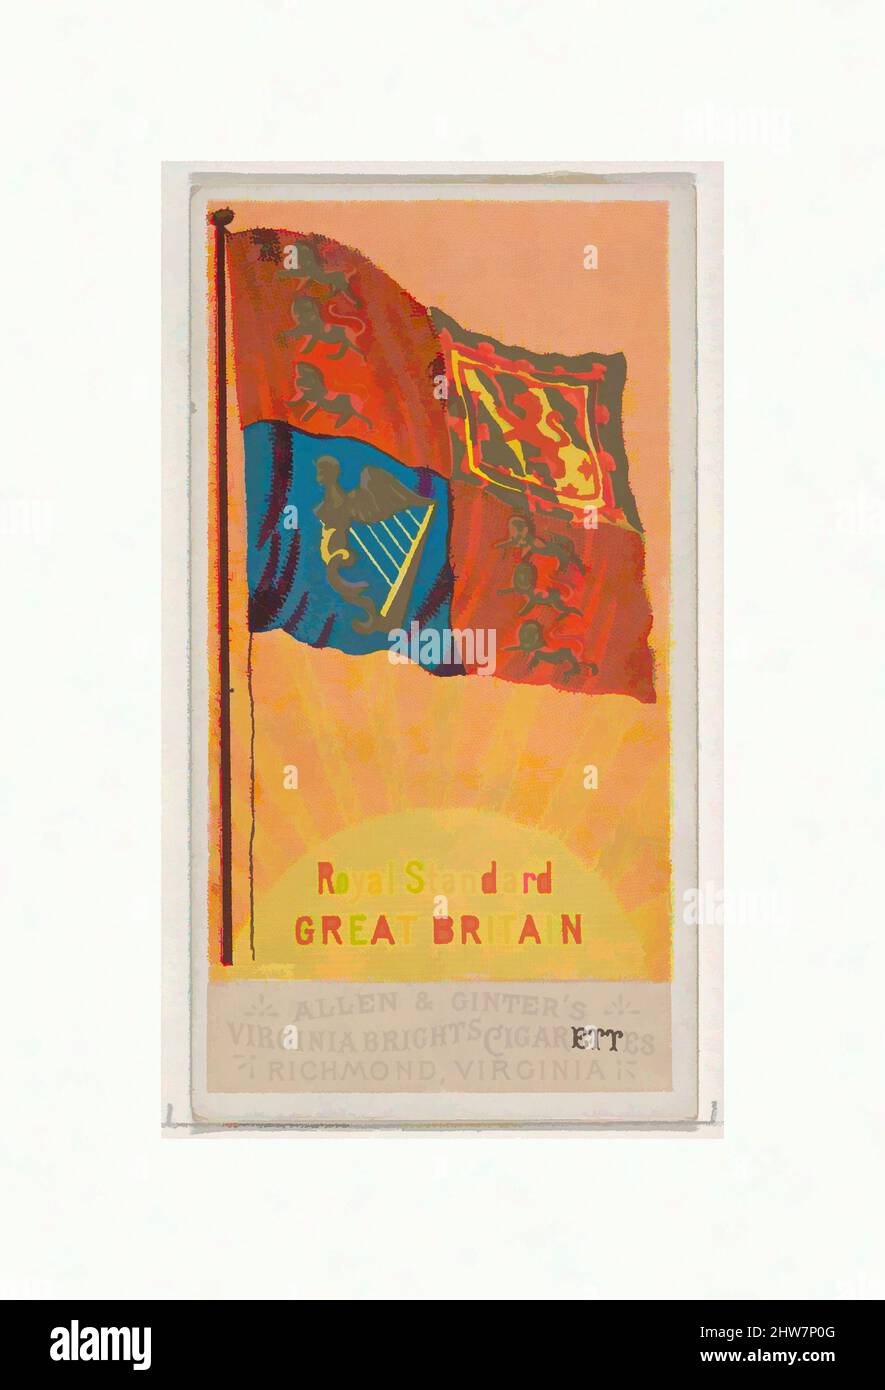 Art Inspired by Royal Standard, Great Britain, from Flags of All Nations, Series 1 (N9) for Allen & Ginter Cigarettes Brands, 1887, Commercial color litograph, Sheet: 2 3/4 x 1 1/2 in. (7 x 3,8 cm), carte commerciali del set, 'Bandiere di tutte le nazioni,' Serie 1 (N9), pubblicato nel 1887 in a, opere classiche modernizzate da Artotop con un tuffo di modernità. Forme, colore e valore, impatto visivo accattivante sulle emozioni artistiche attraverso la libertà delle opere d'arte in modo contemporaneo. Un messaggio senza tempo che persegue una nuova direzione selvaggiamente creativa. Artisti che si rivolgono al supporto digitale e creano l'NFT Artotop Foto Stock